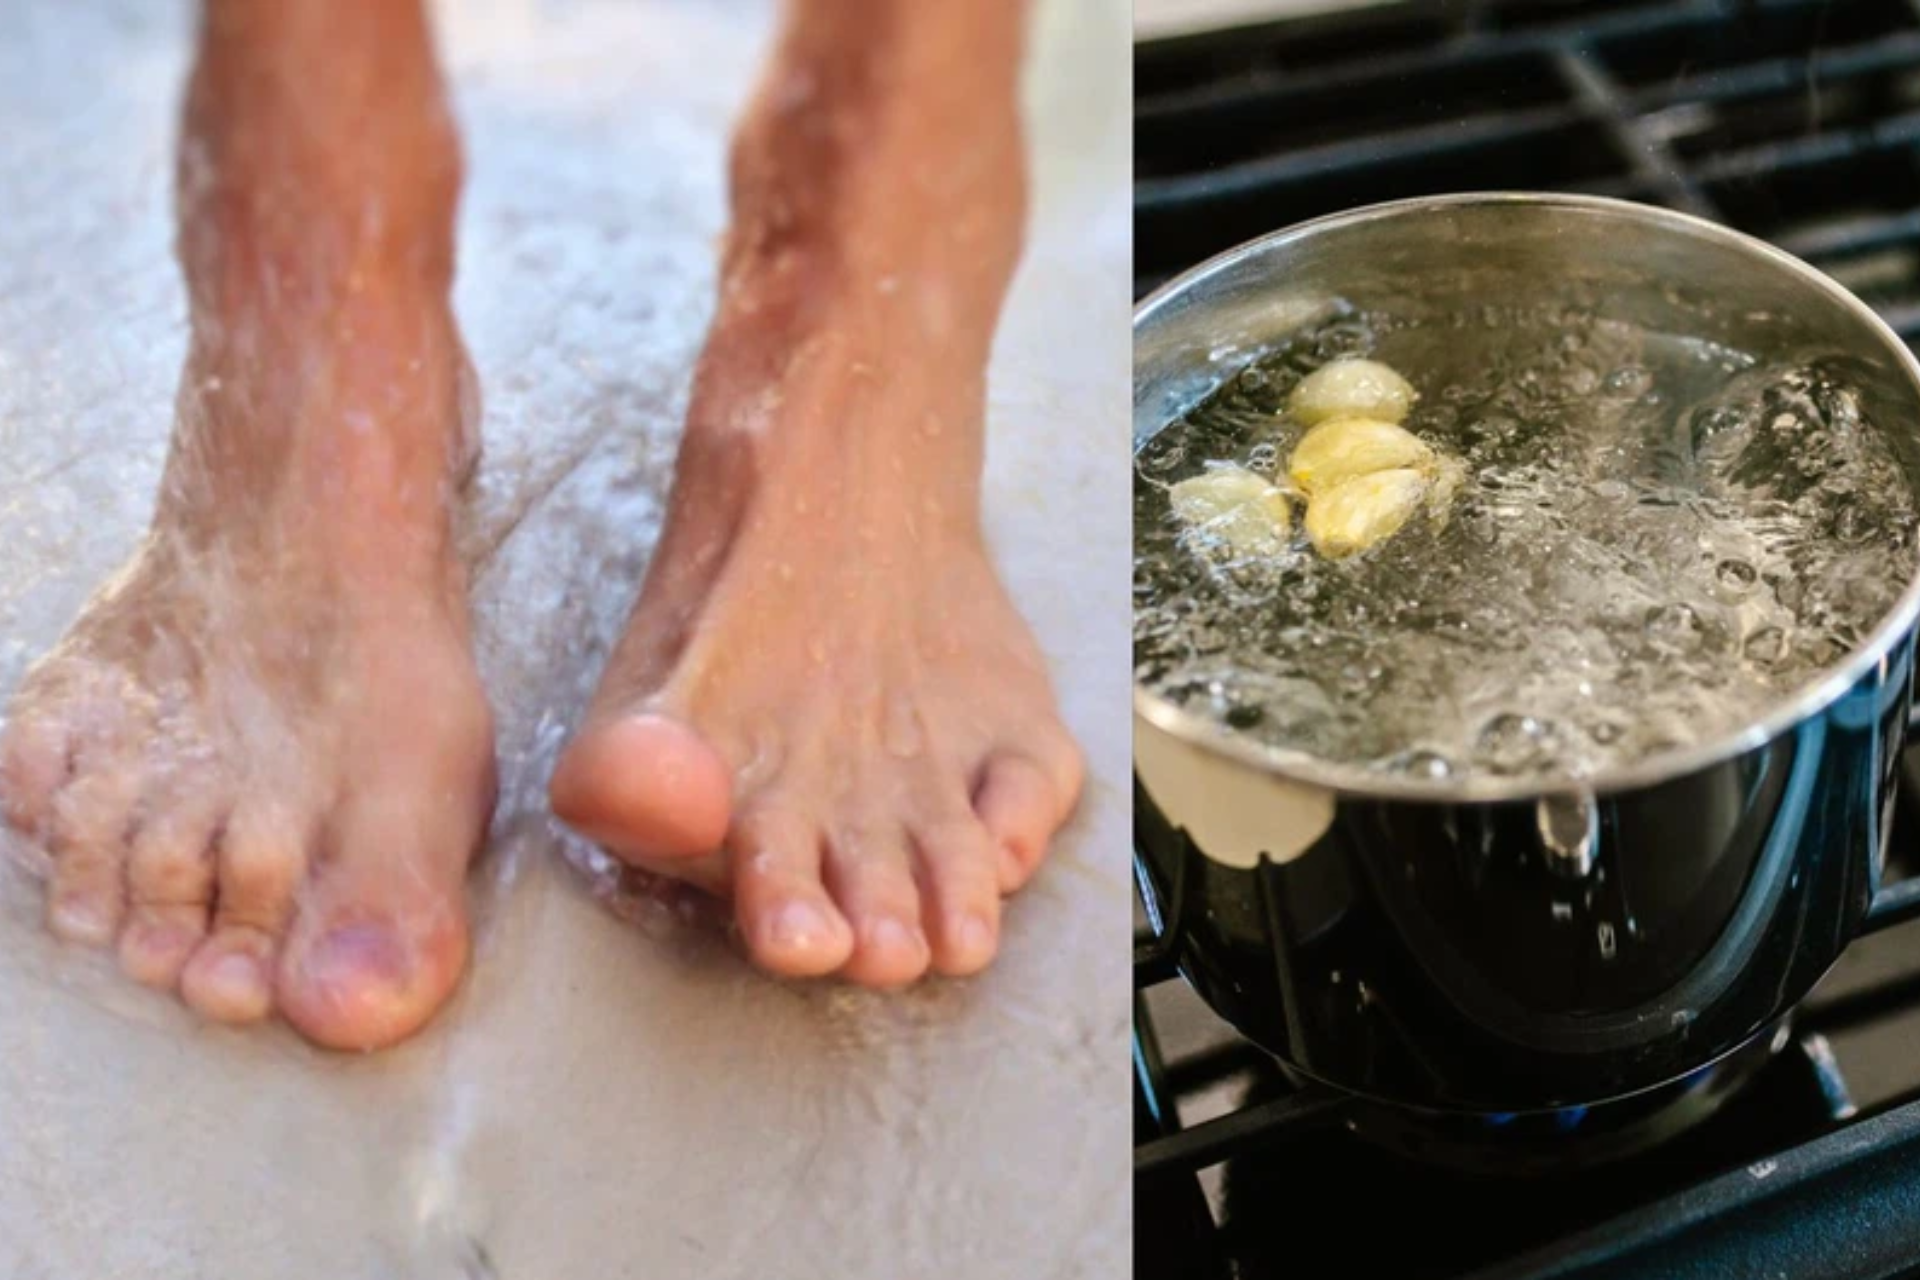 soaking feet in warm water